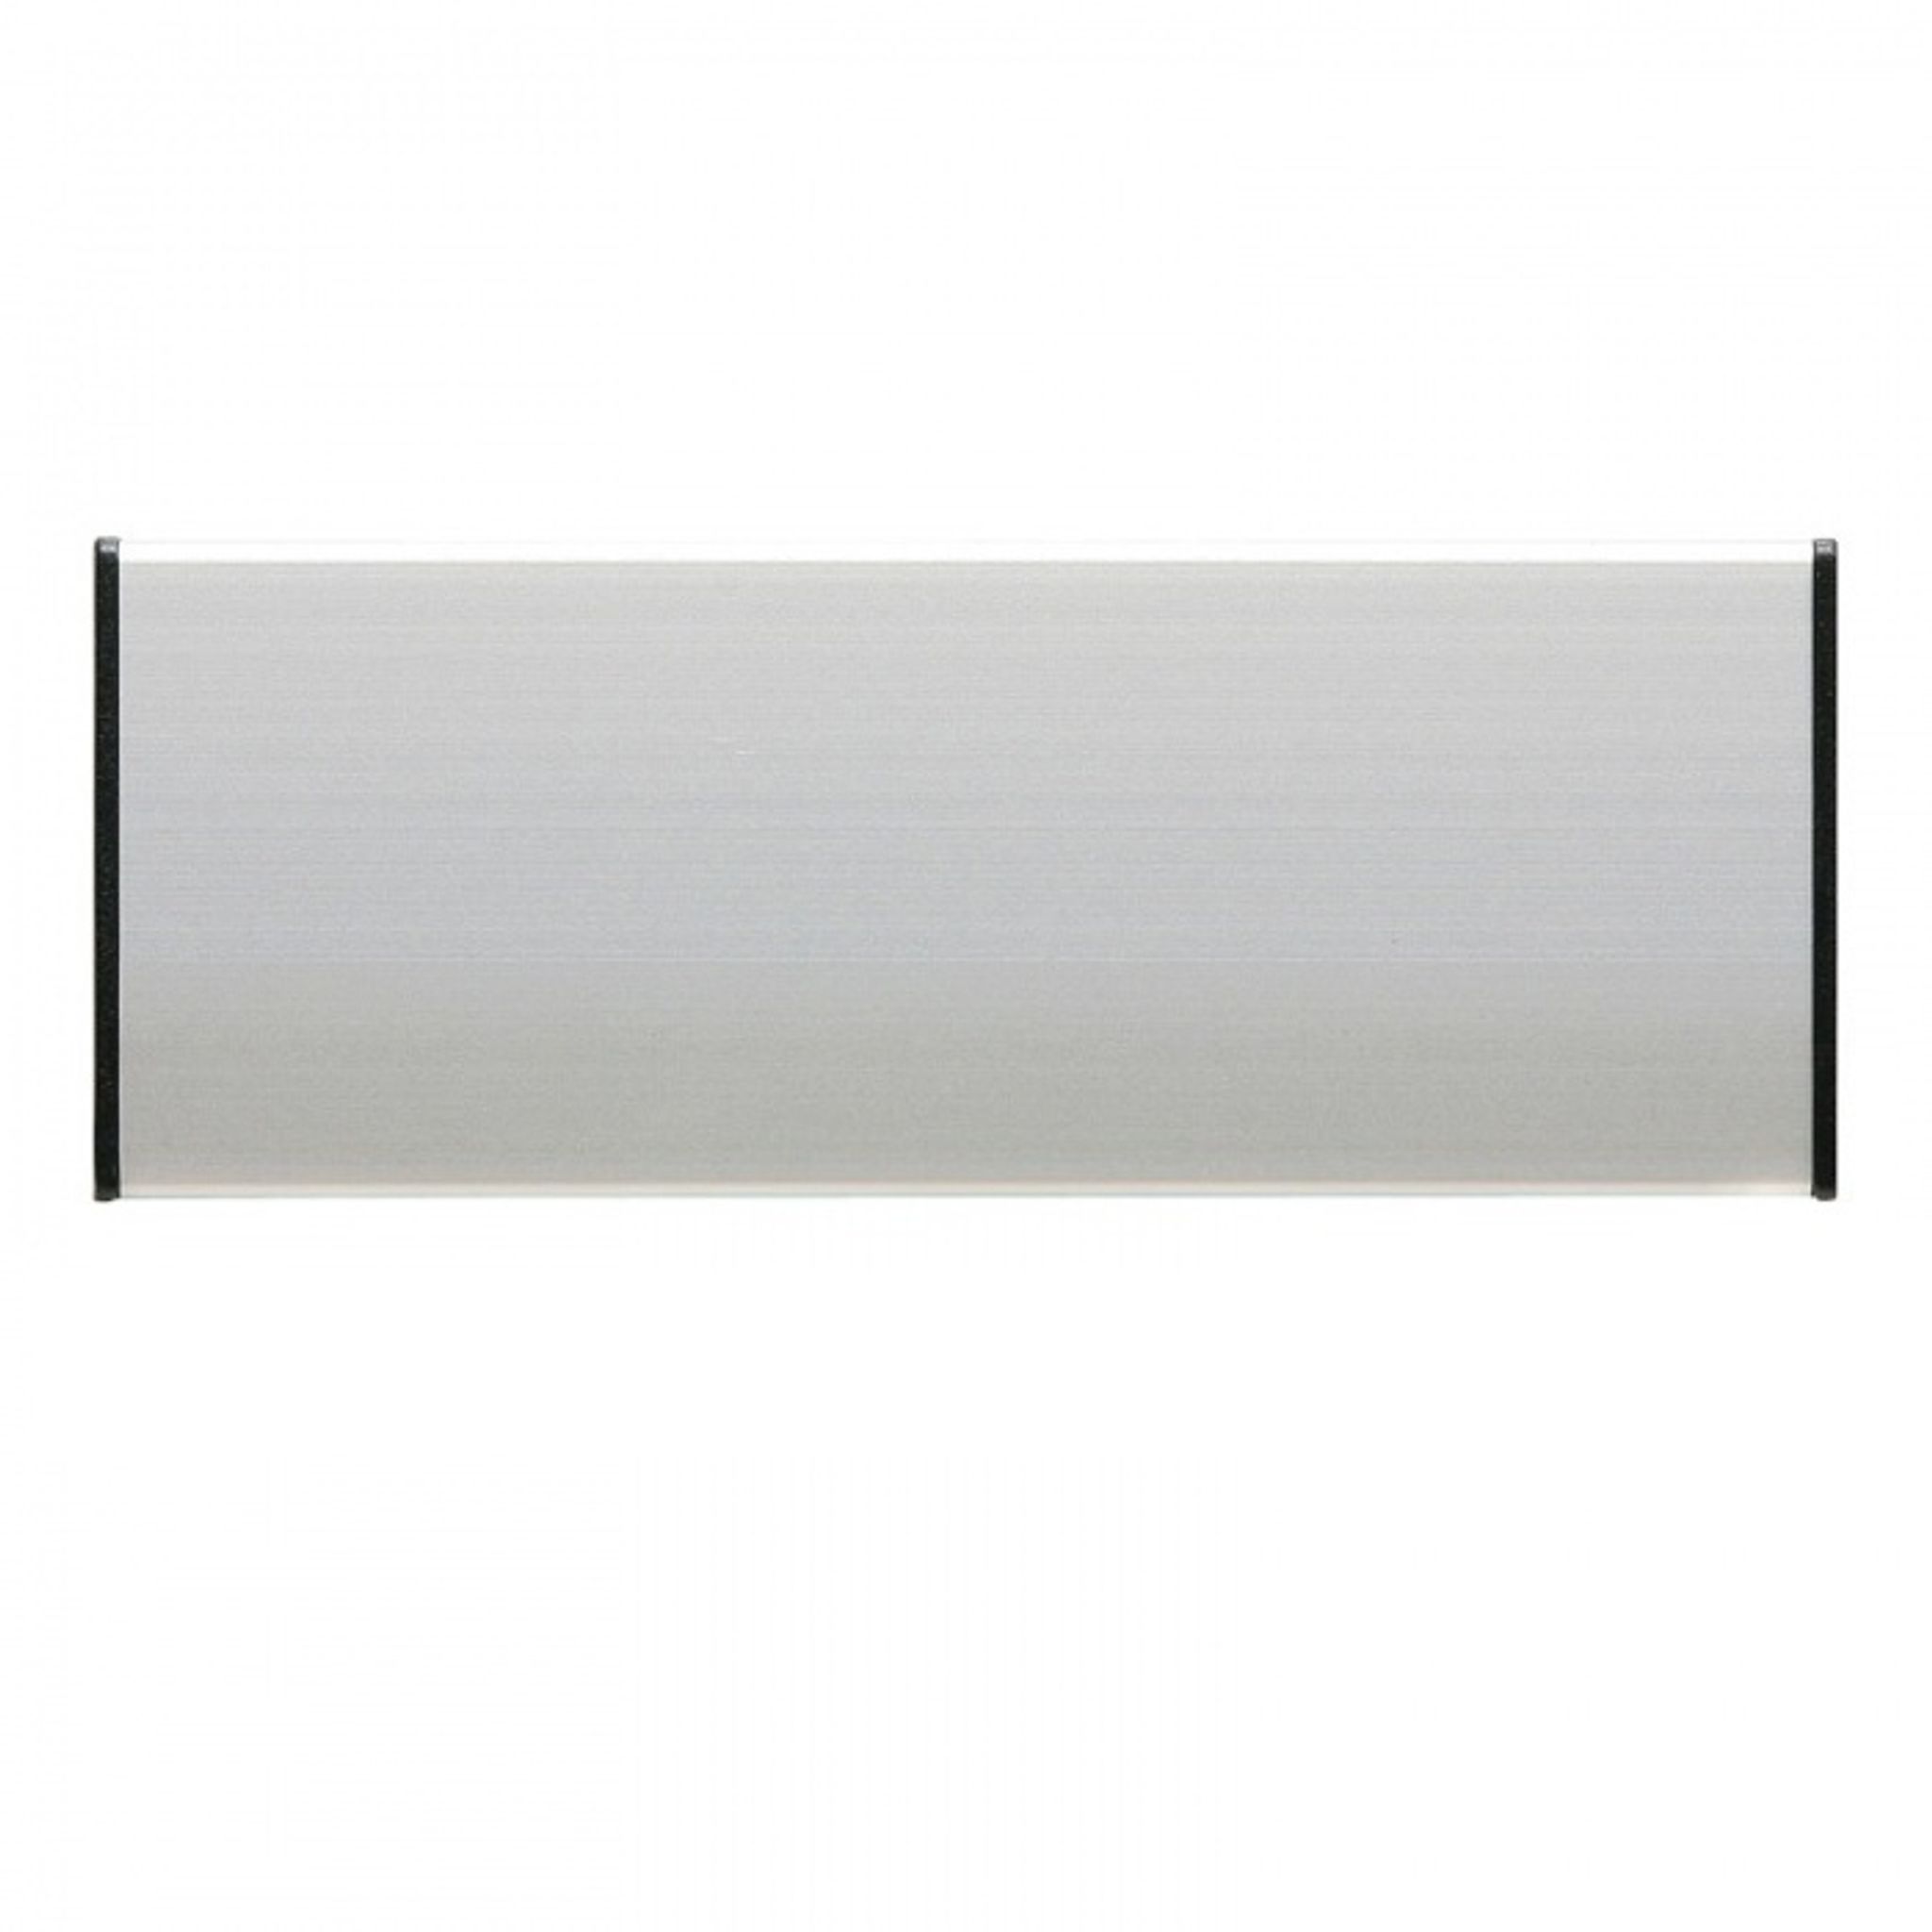 Türschilder für selbstklebende Folien, 187 x 62 mm, 1 Zeile